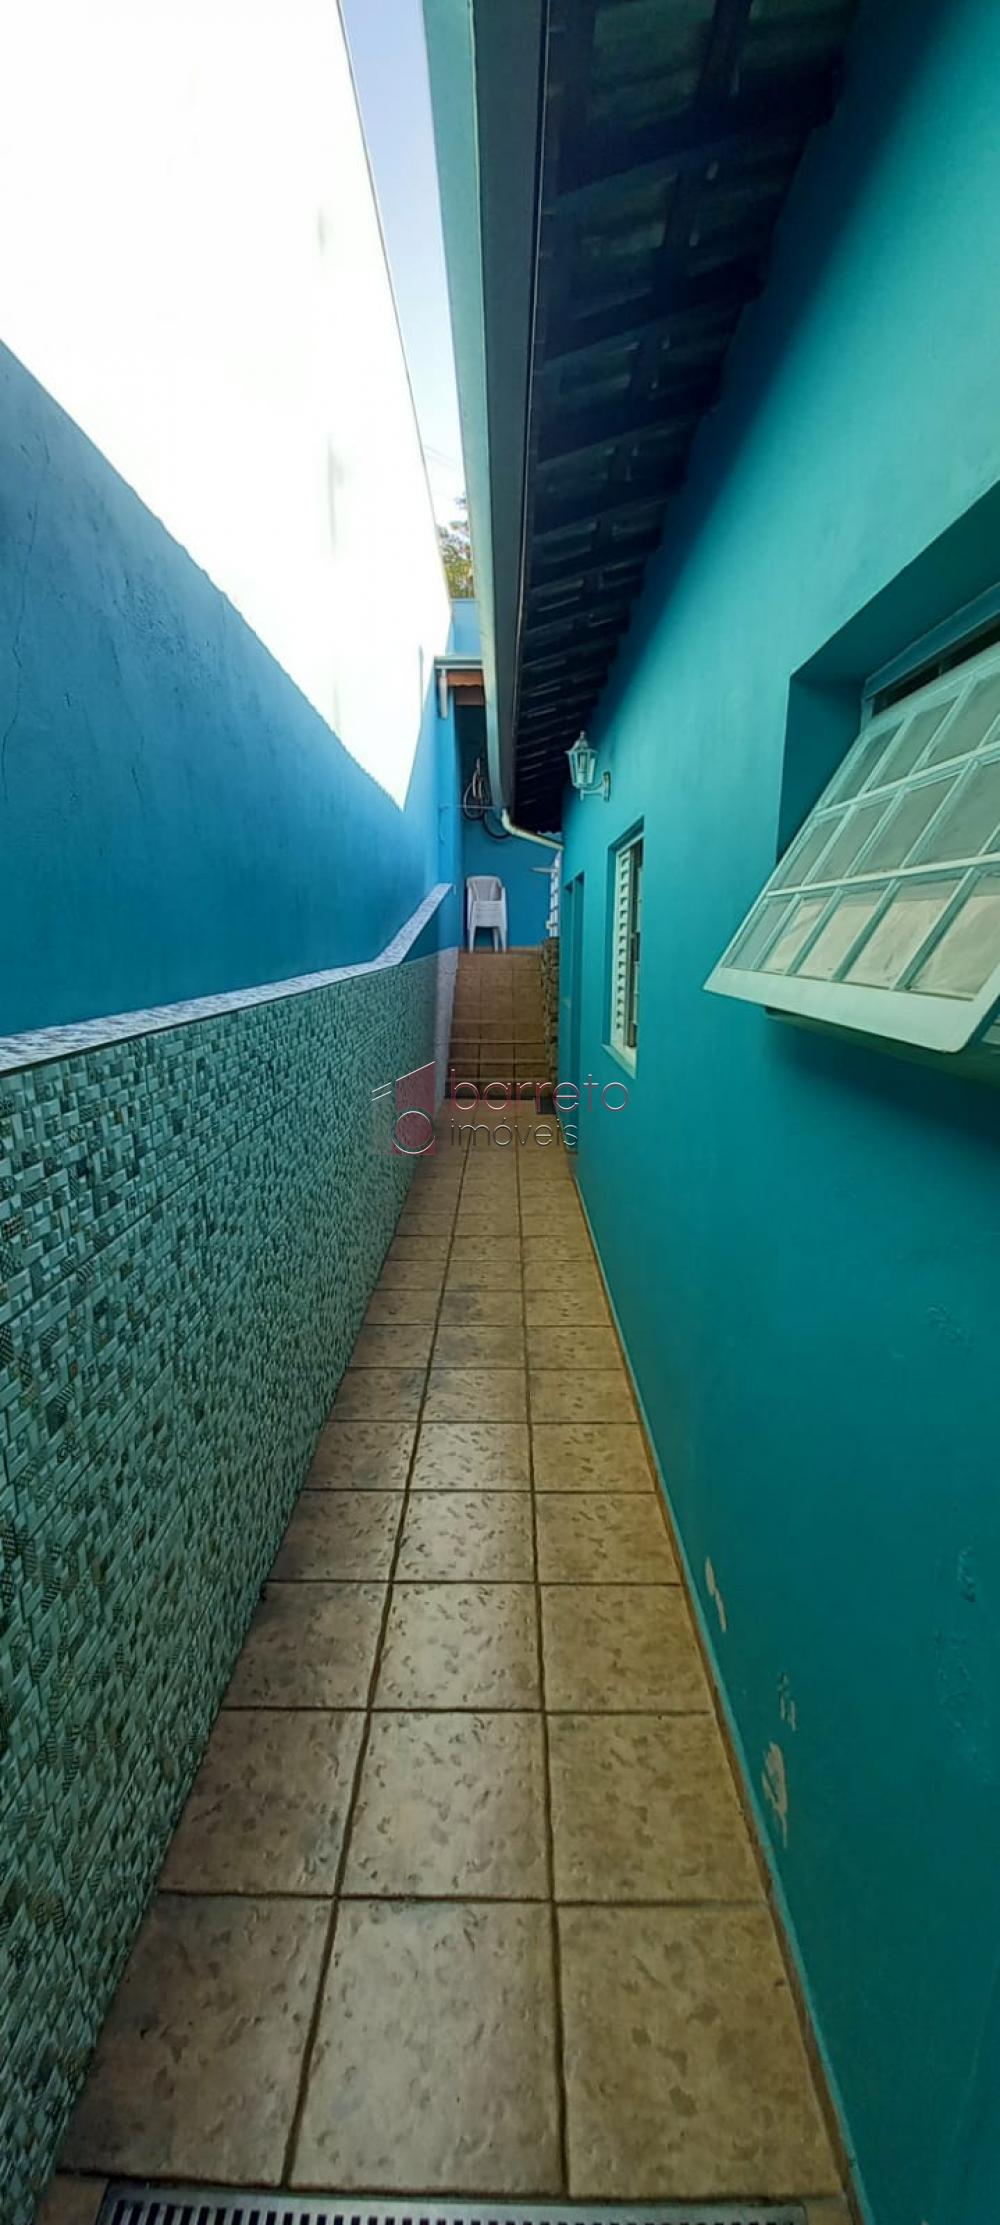 Alugar Casa / Sobrado em Jundiaí R$ 2.900,00 - Foto 11